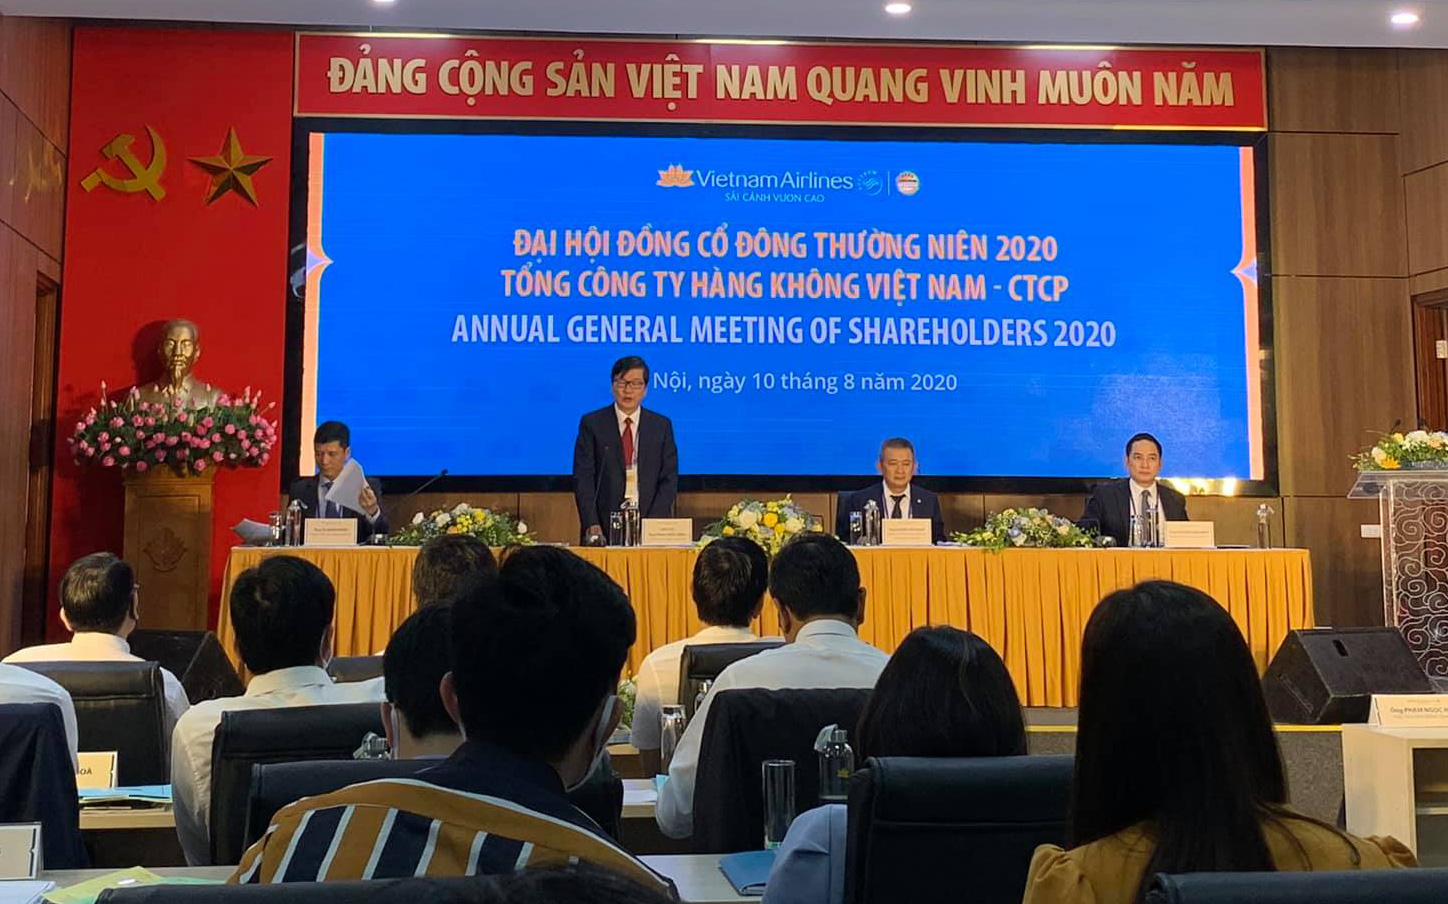 ĐHĐCĐ Vietnam Airlines: Cuối tháng 8 cạn tiền, trình phương án vay 4.000 tỷ và tăng vốn chủ sở hữu 8.000 tỷ